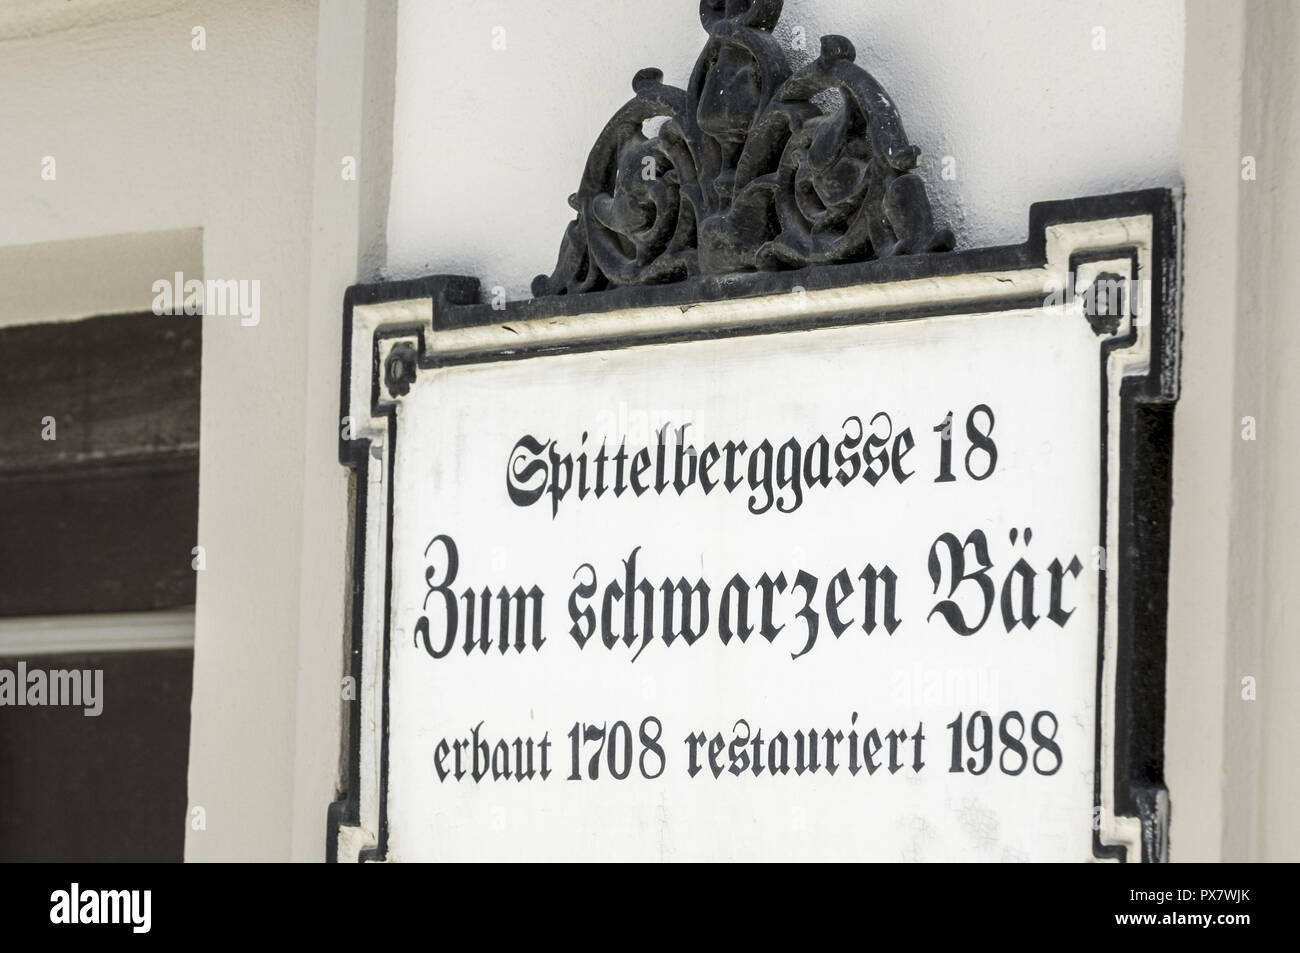 Vienna, Spittelberg, Spittelberggasse, antique restaurant sign, Austria, 7. District Stock Photo